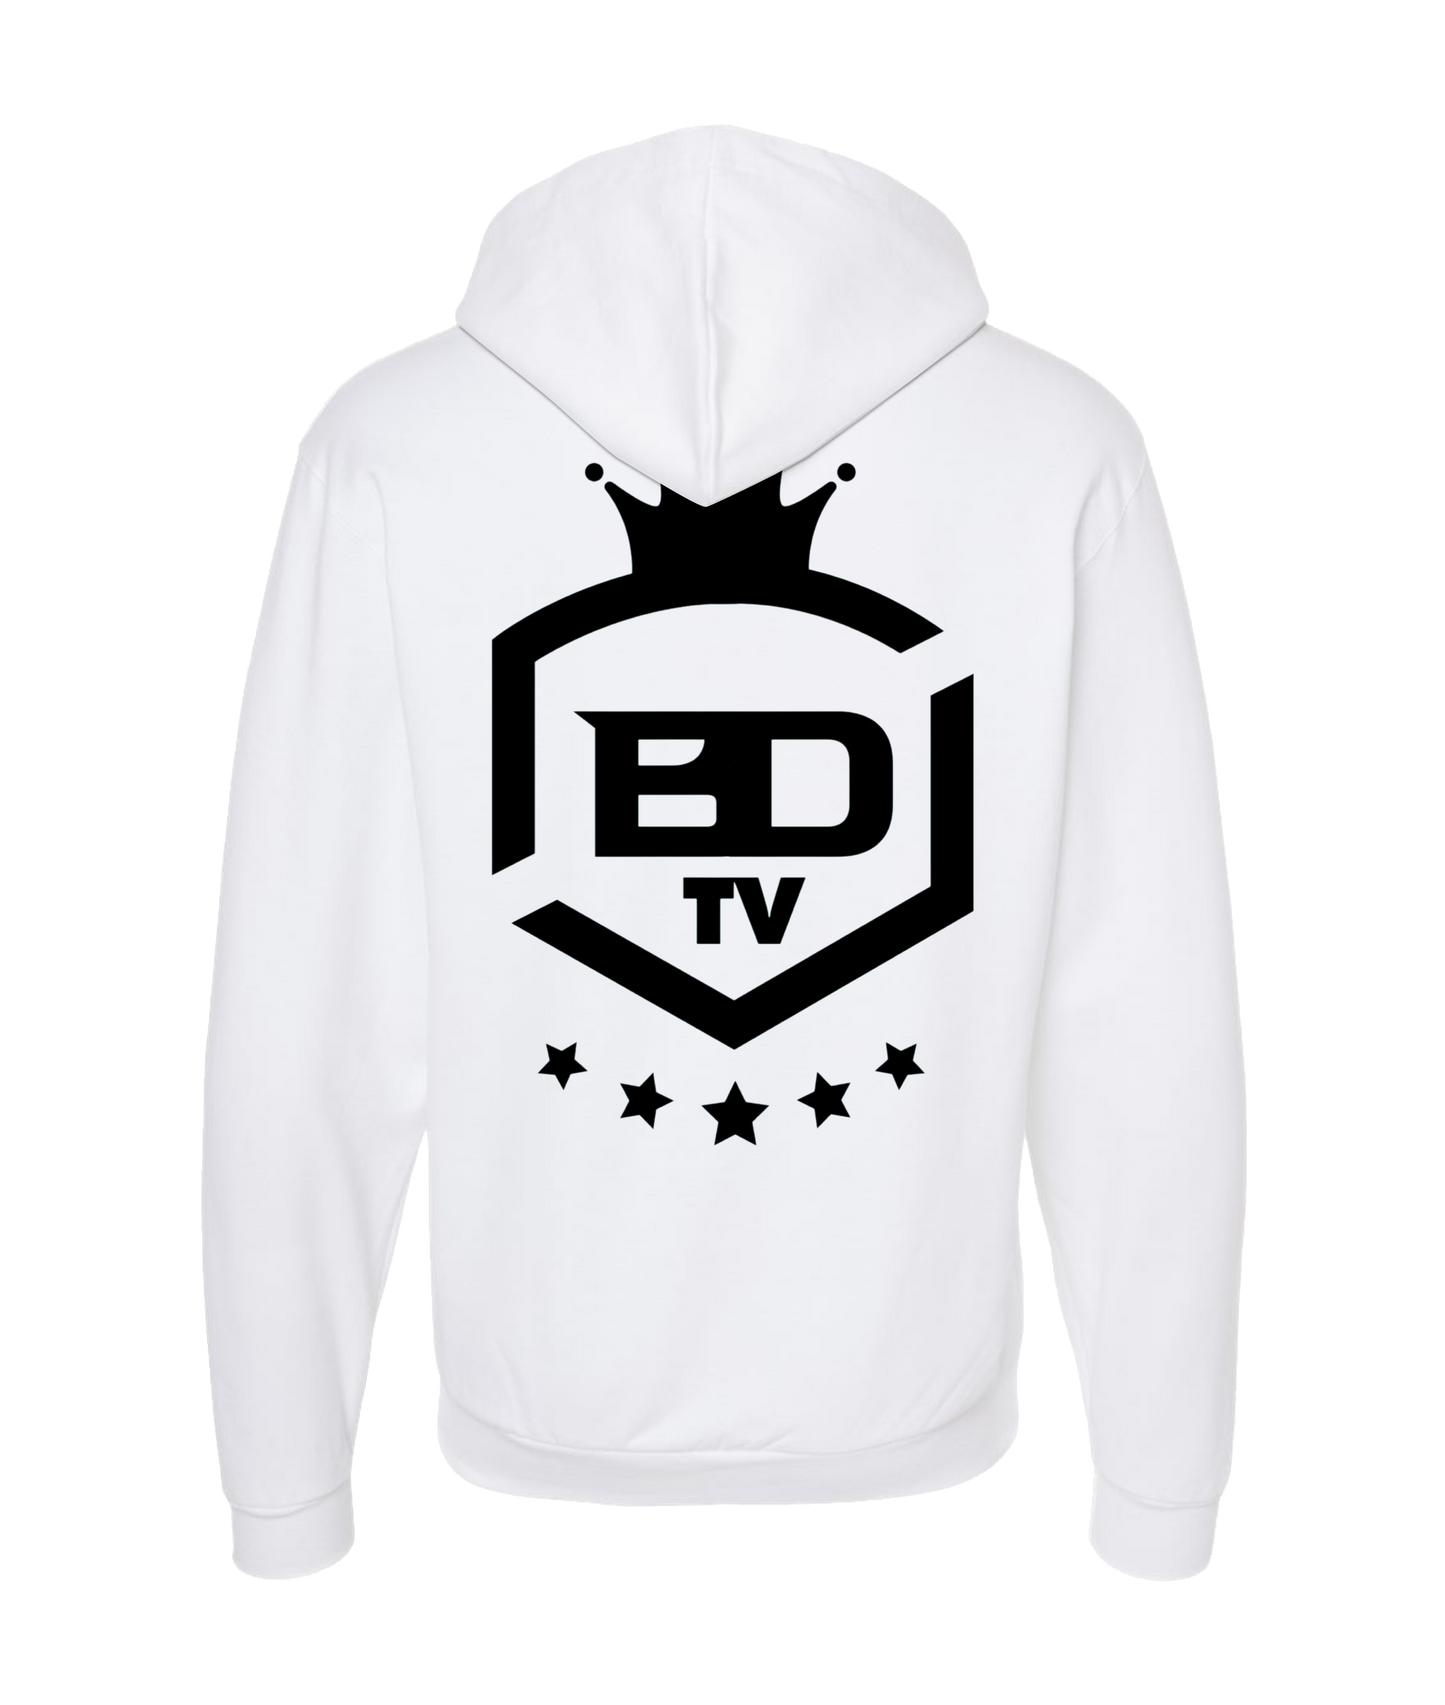 MobiWeb - BDTV Logo - White Zip Up Hoodie